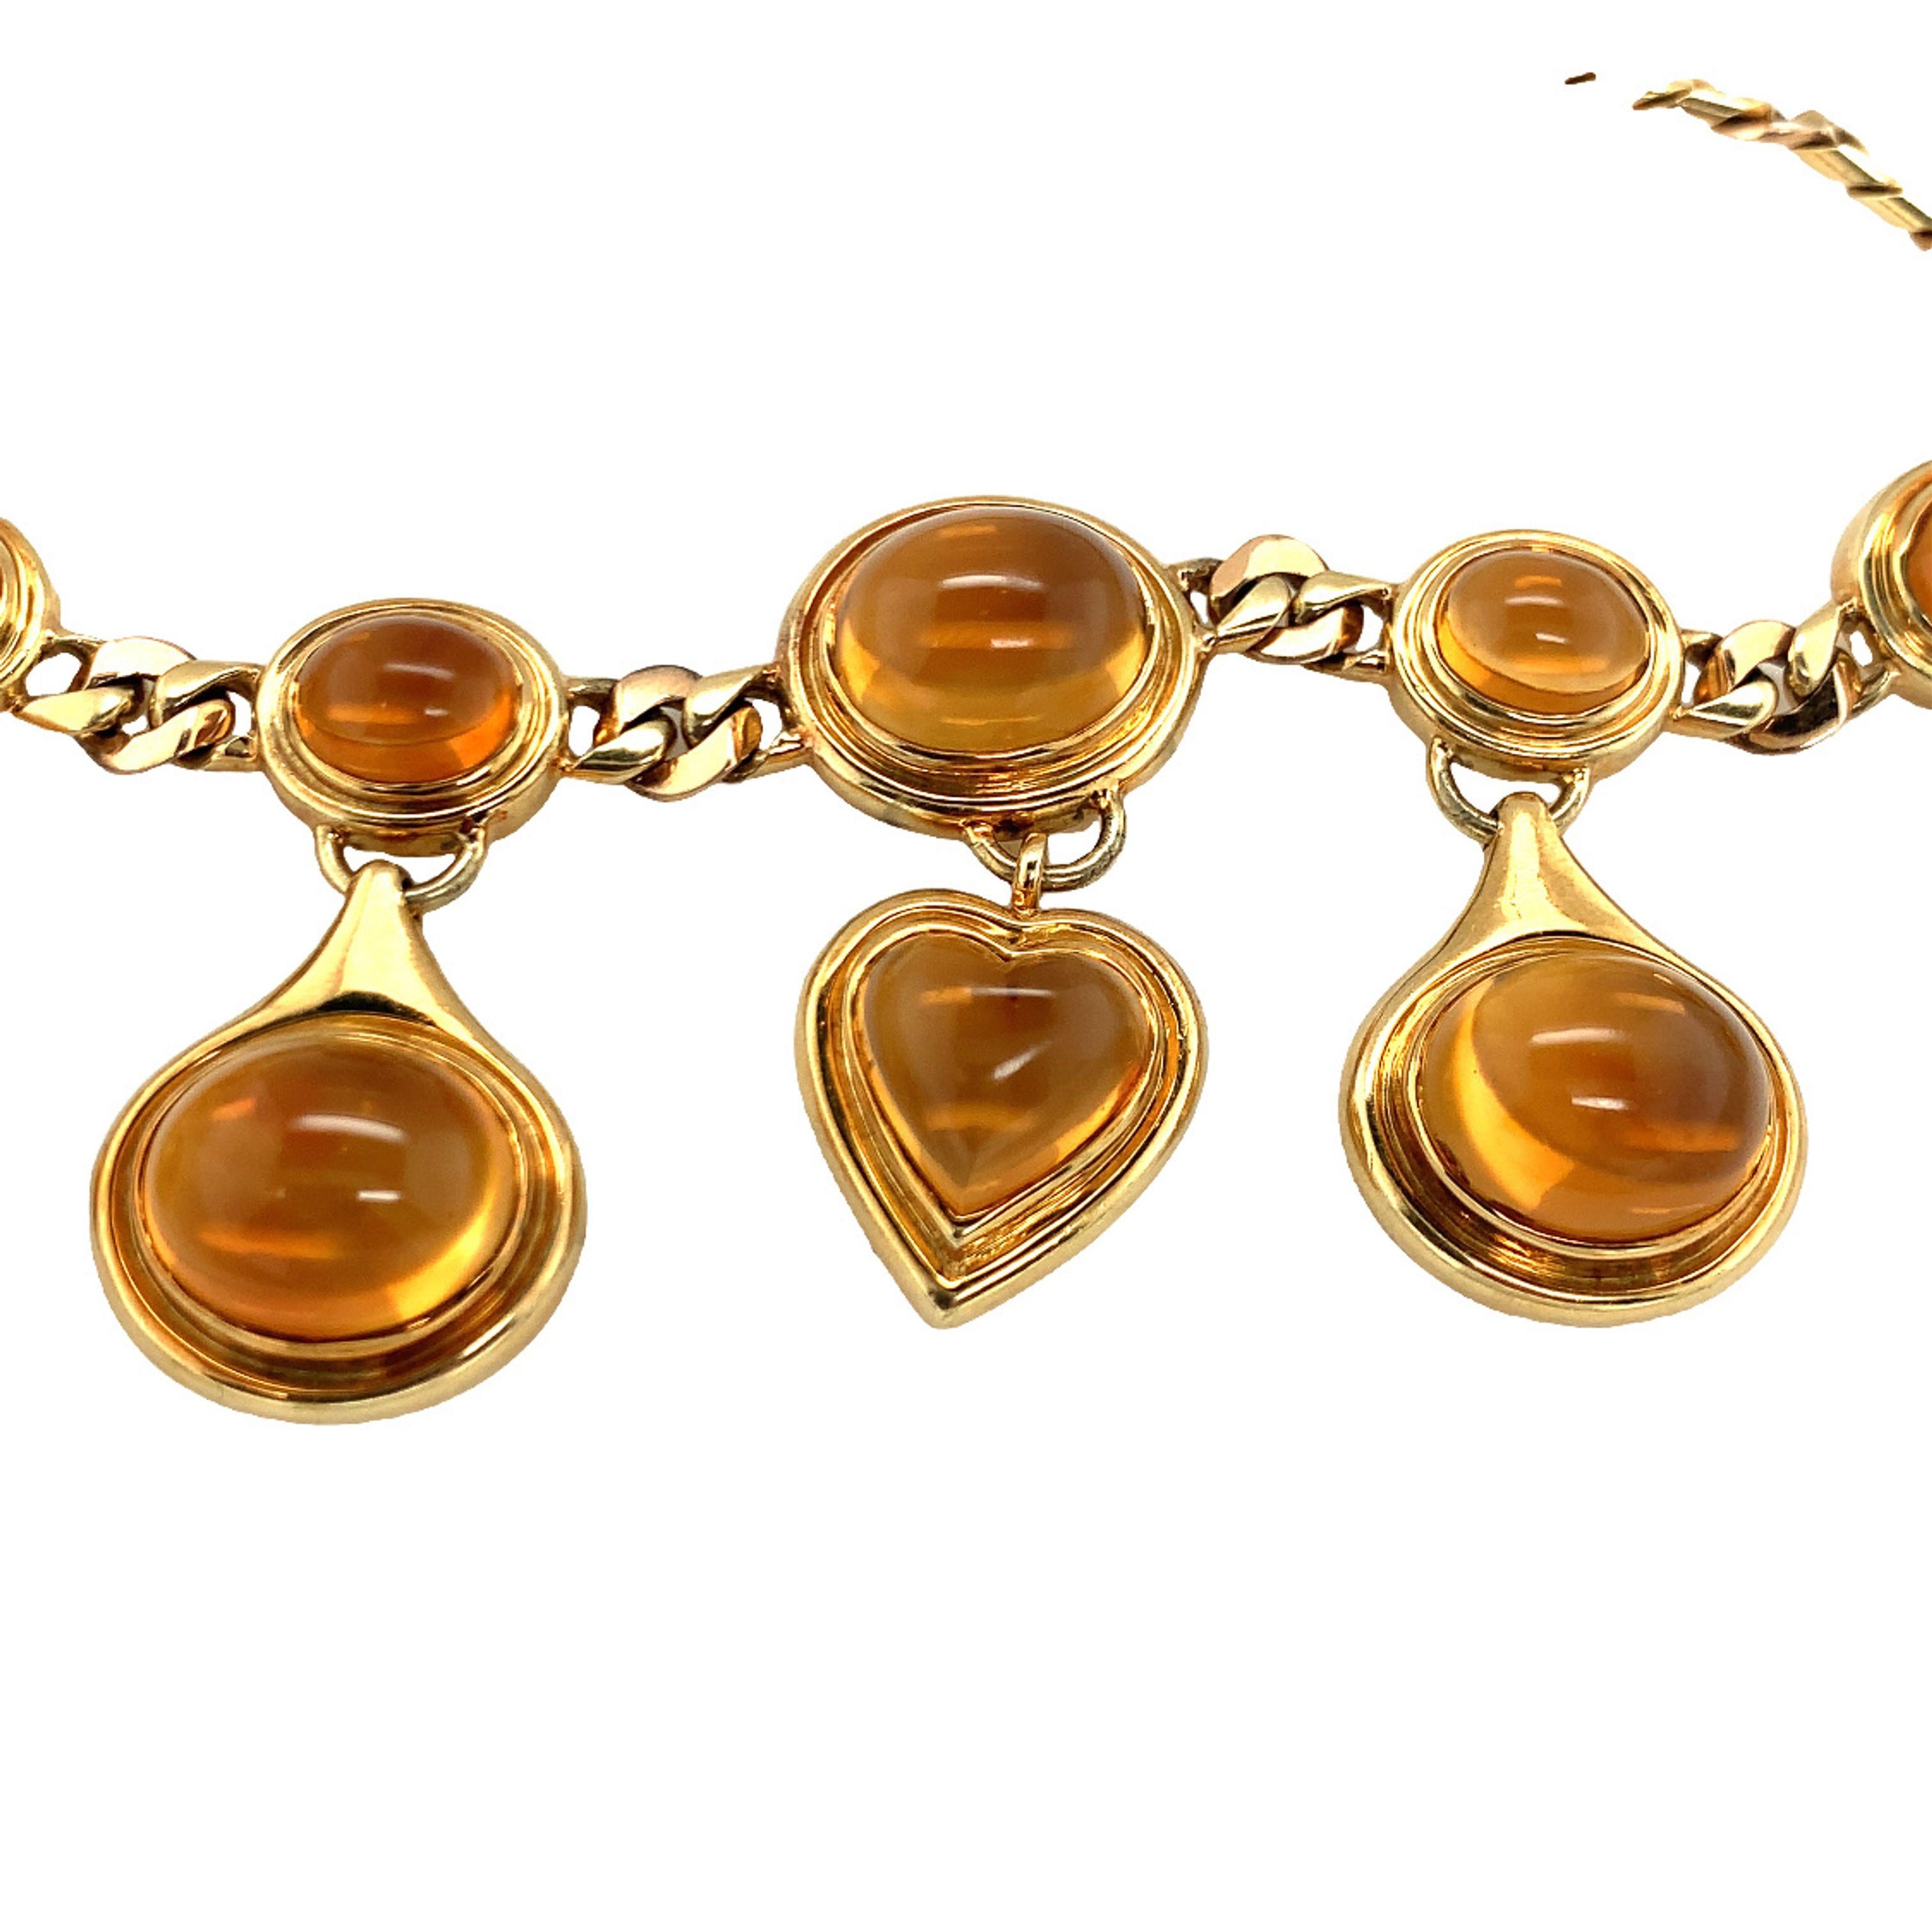 Ein Citrin 18K Gelbgold Halskette, bestehend aus zehn Lünette gesetzt, oval und Herz Cabochon geschnitten suspendiert Citrin insgesamt 120 ct. auf einem Bi-Color-Gold Kandare Link Kette Halskette. Italienische Markenzeichen.

Extravagant, königlich,